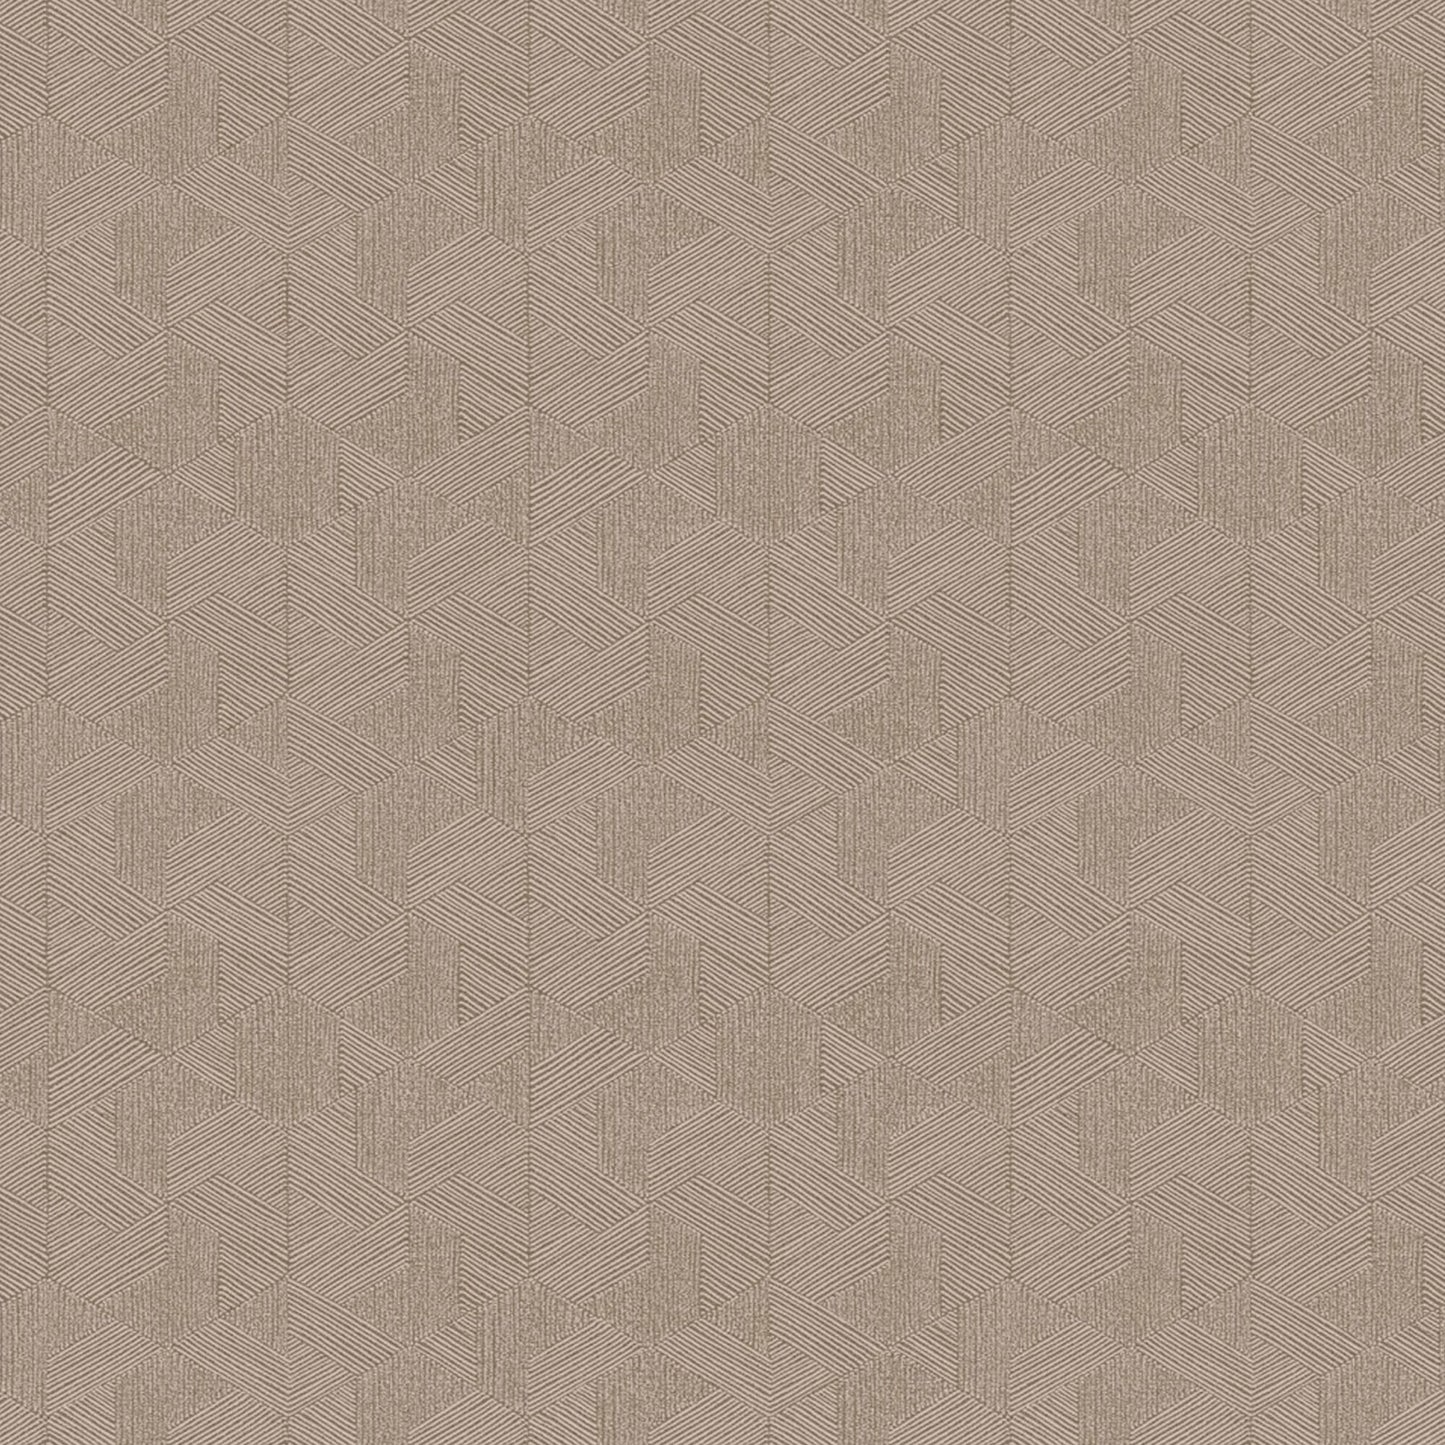 Purchase JF Wallpaper Pattern# 8218 37W9331 Brown Geometric Wallpaper